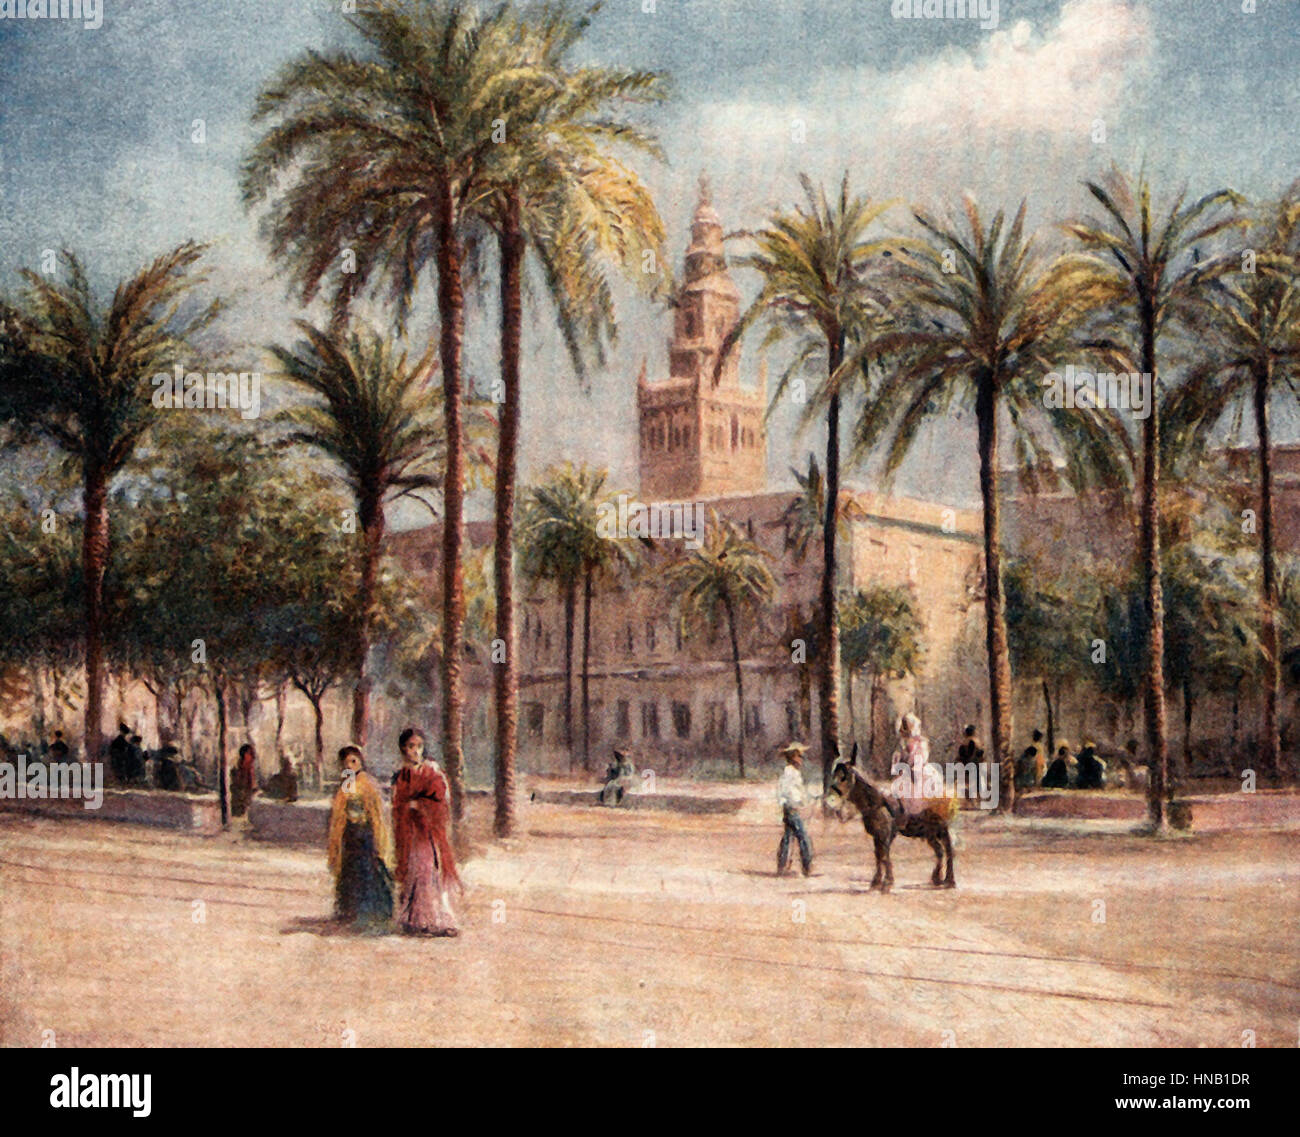 Plaza de San Fernando, Seville, Spain, circa 1900 Stock Photo